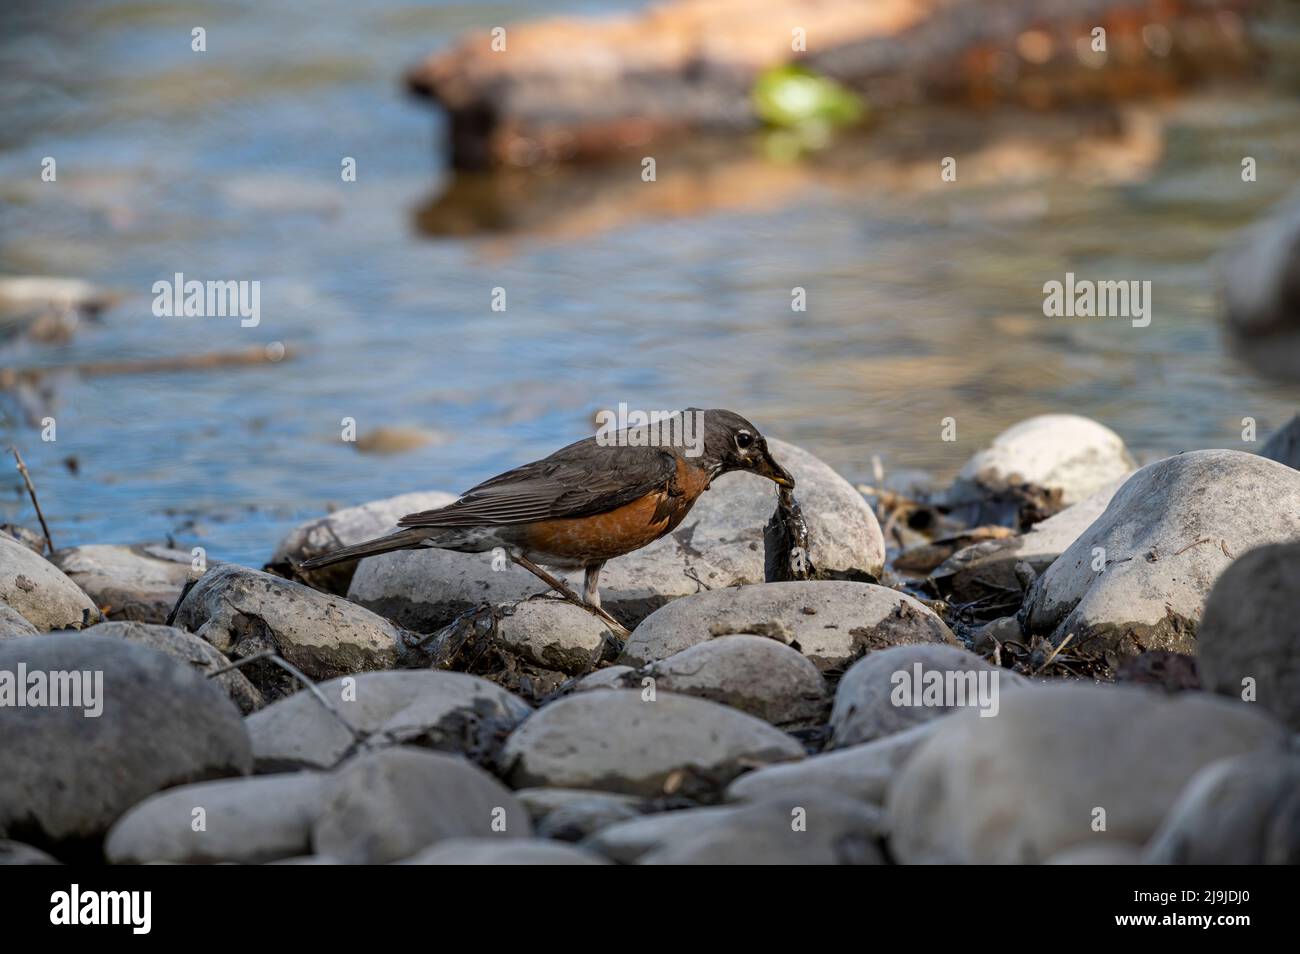 American robin (Turdus migratorius) colecting nesting material, Carburn Park, Calgary, Alberta, Canada Stock Photo